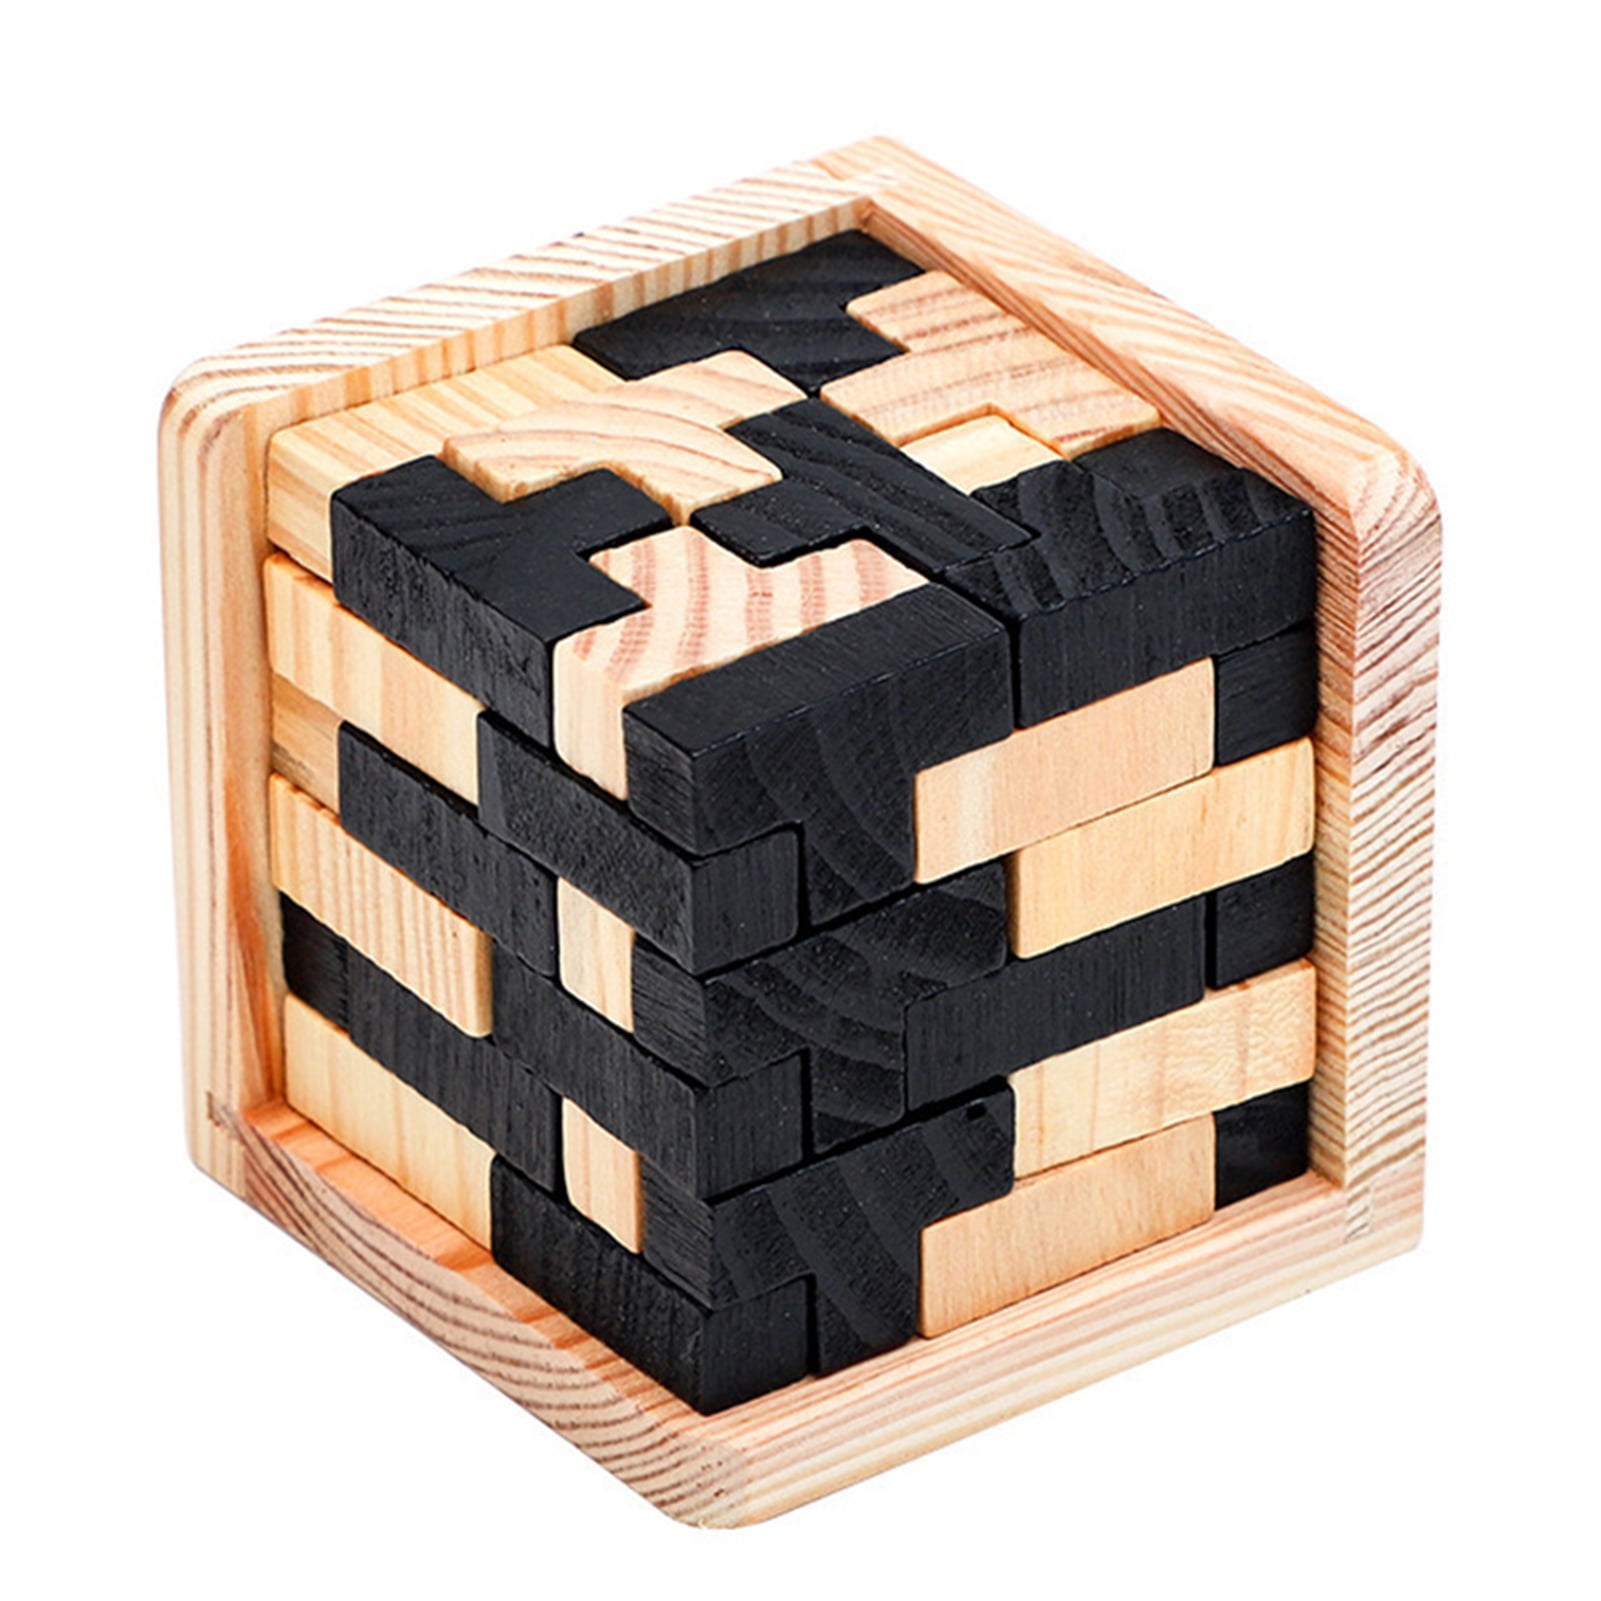 Details about   100pcs Building Blocks Set Natural Wooden Puzzle Cubes Kids Educational Toy 